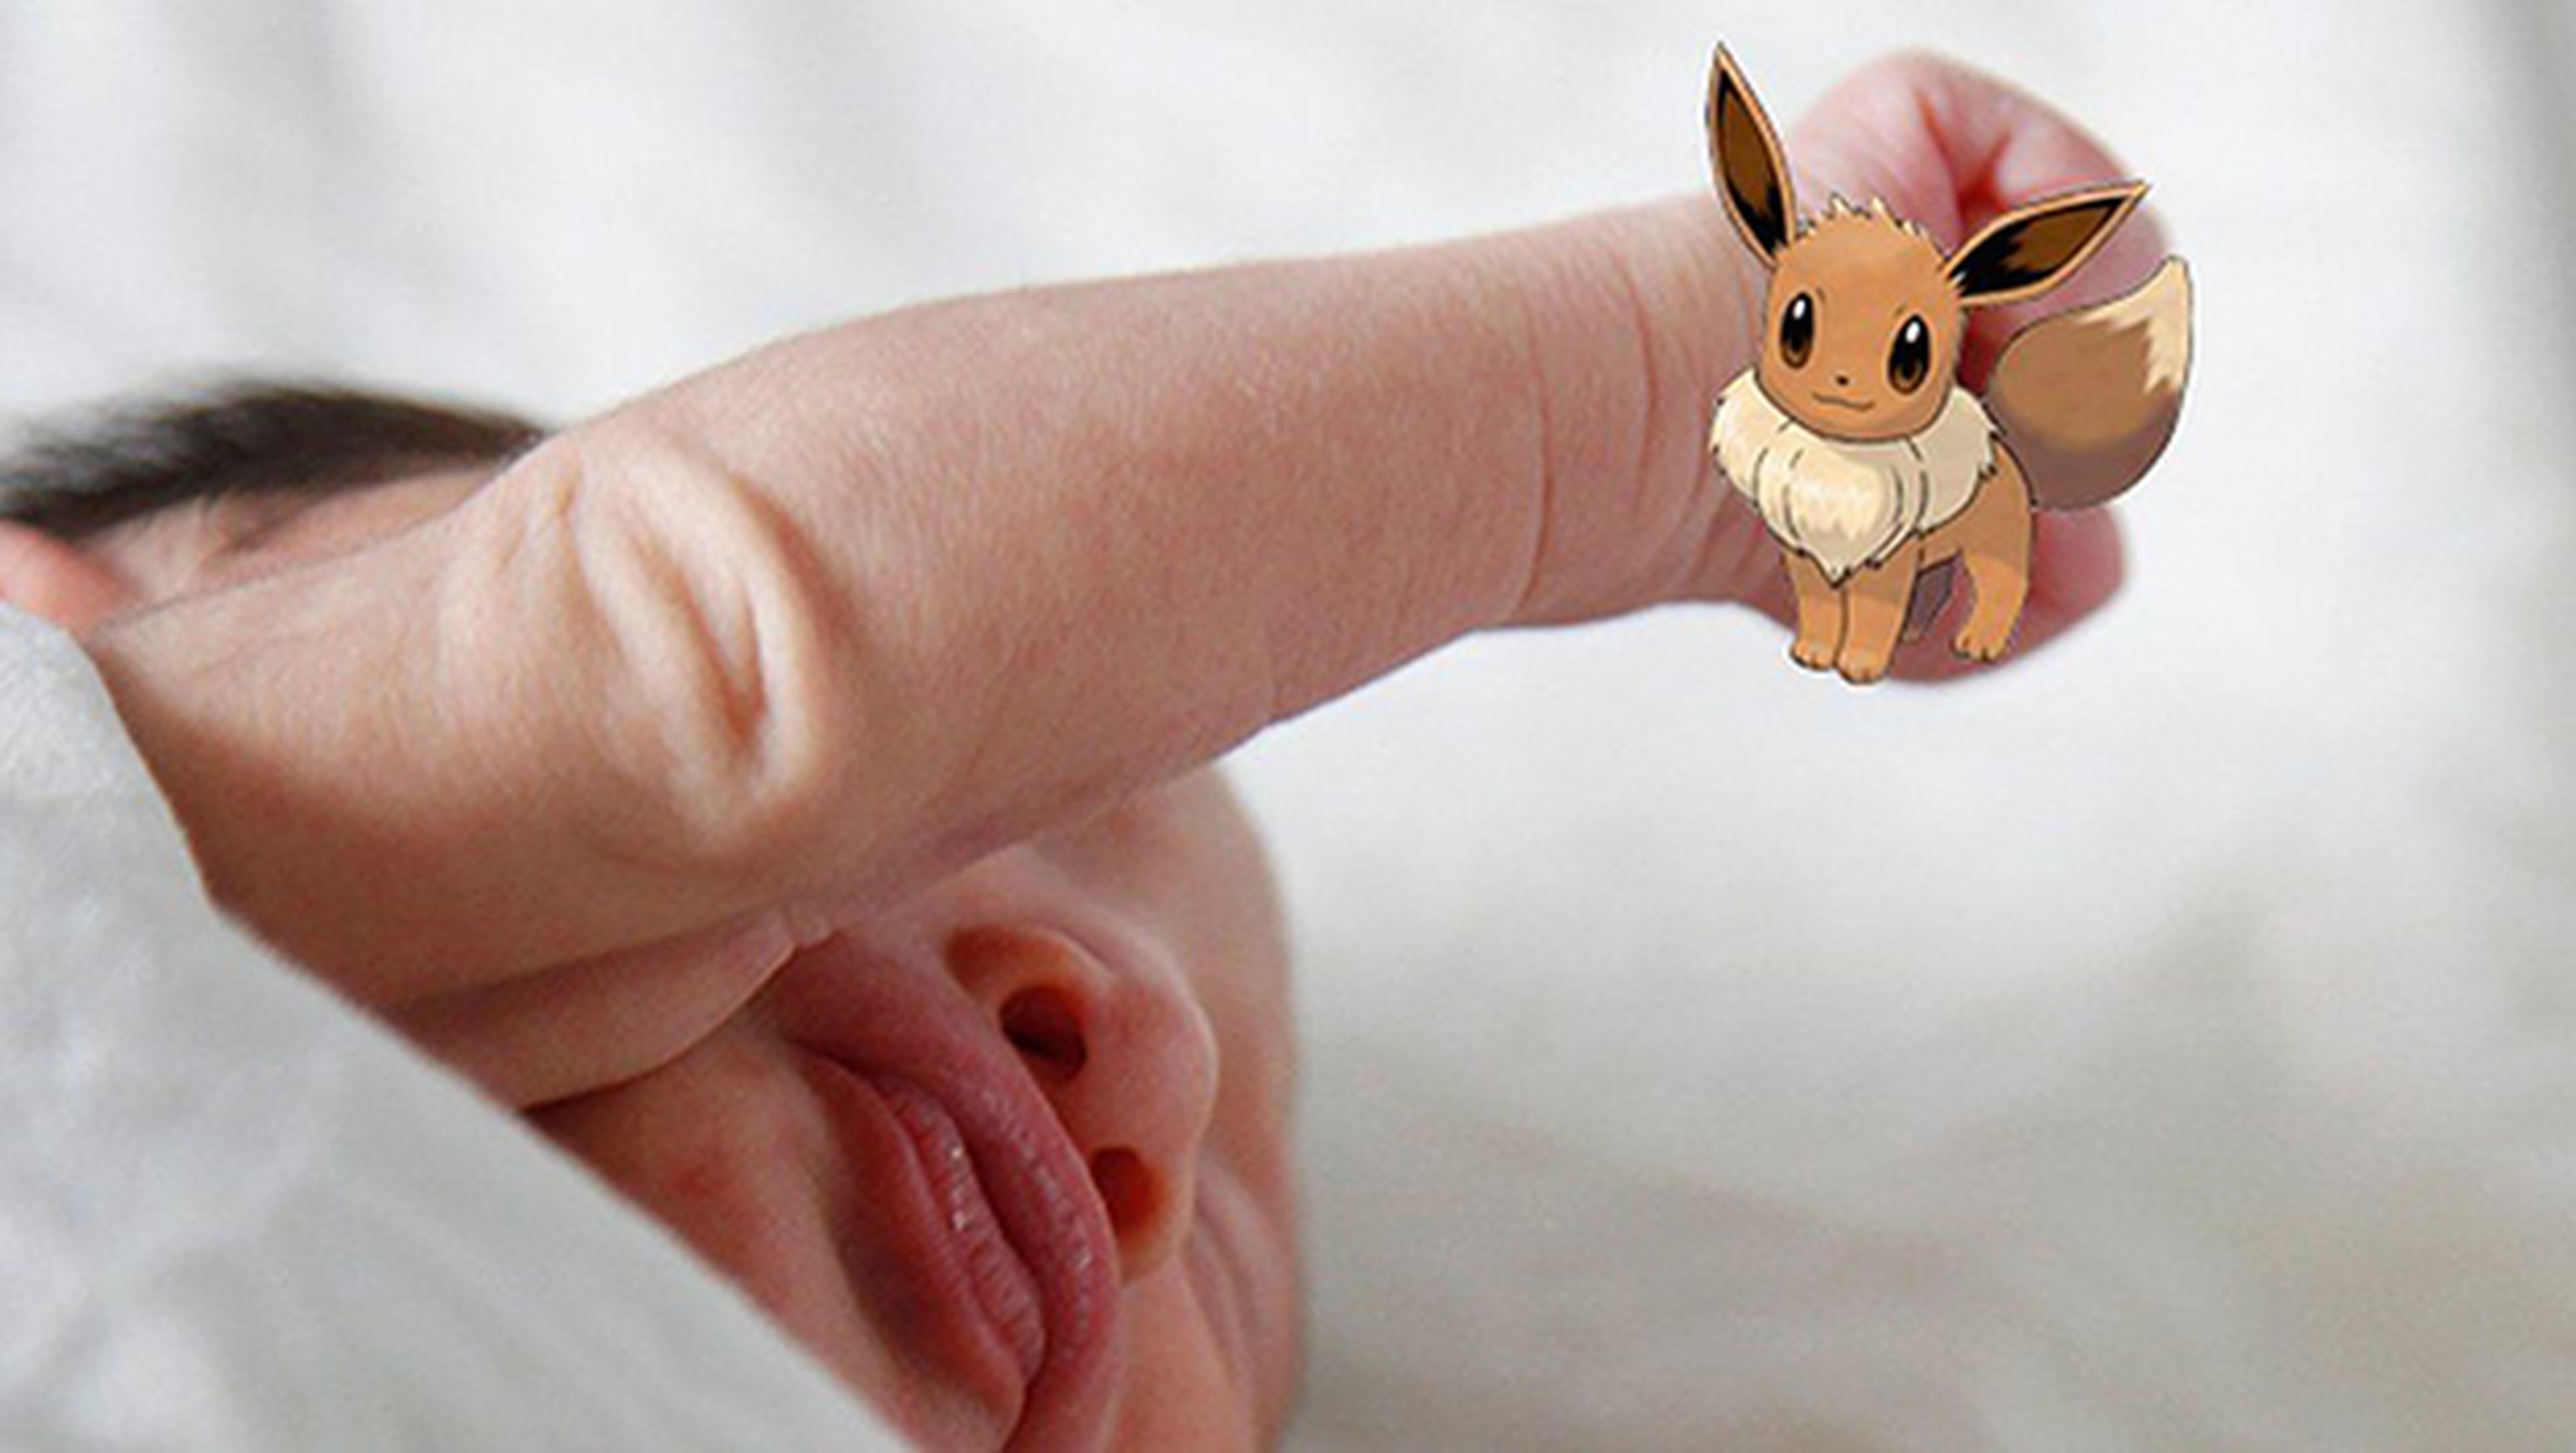 Los padres están poniendo nombres de Pokémon a sus hijos